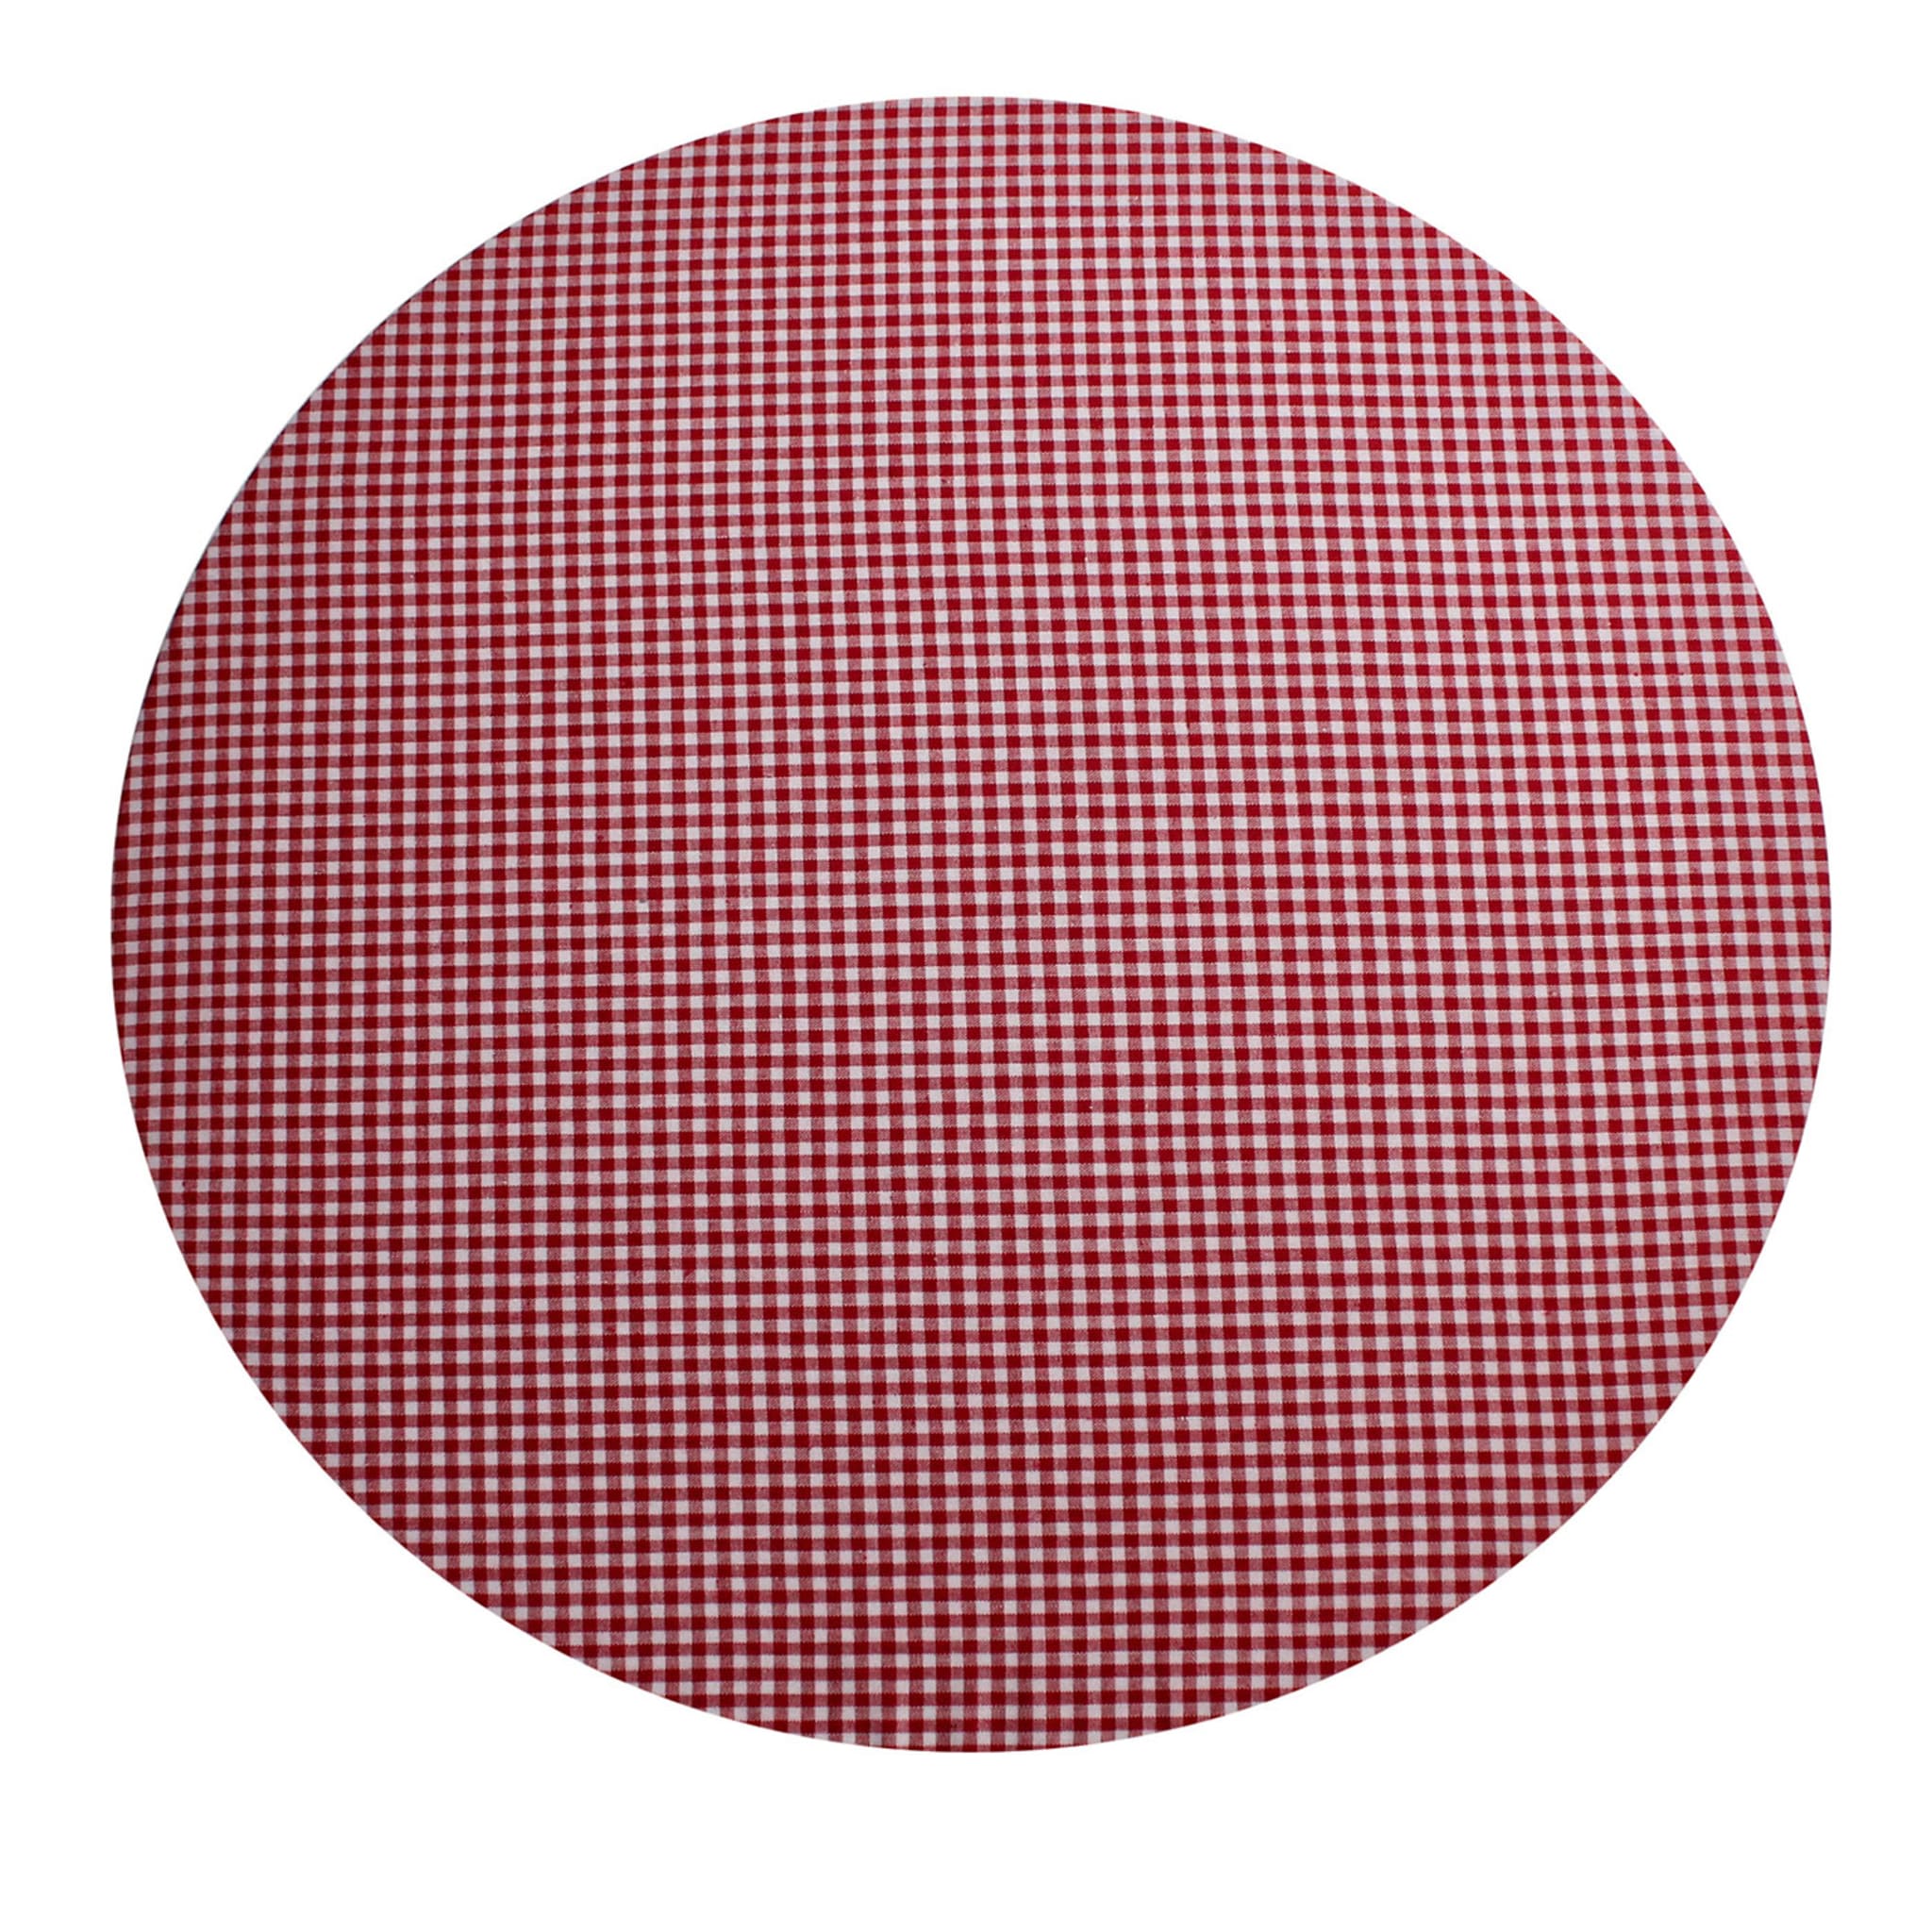 Tovaglietta rotonda Cuffiette Check bianca e rossa #1 - Vista principale